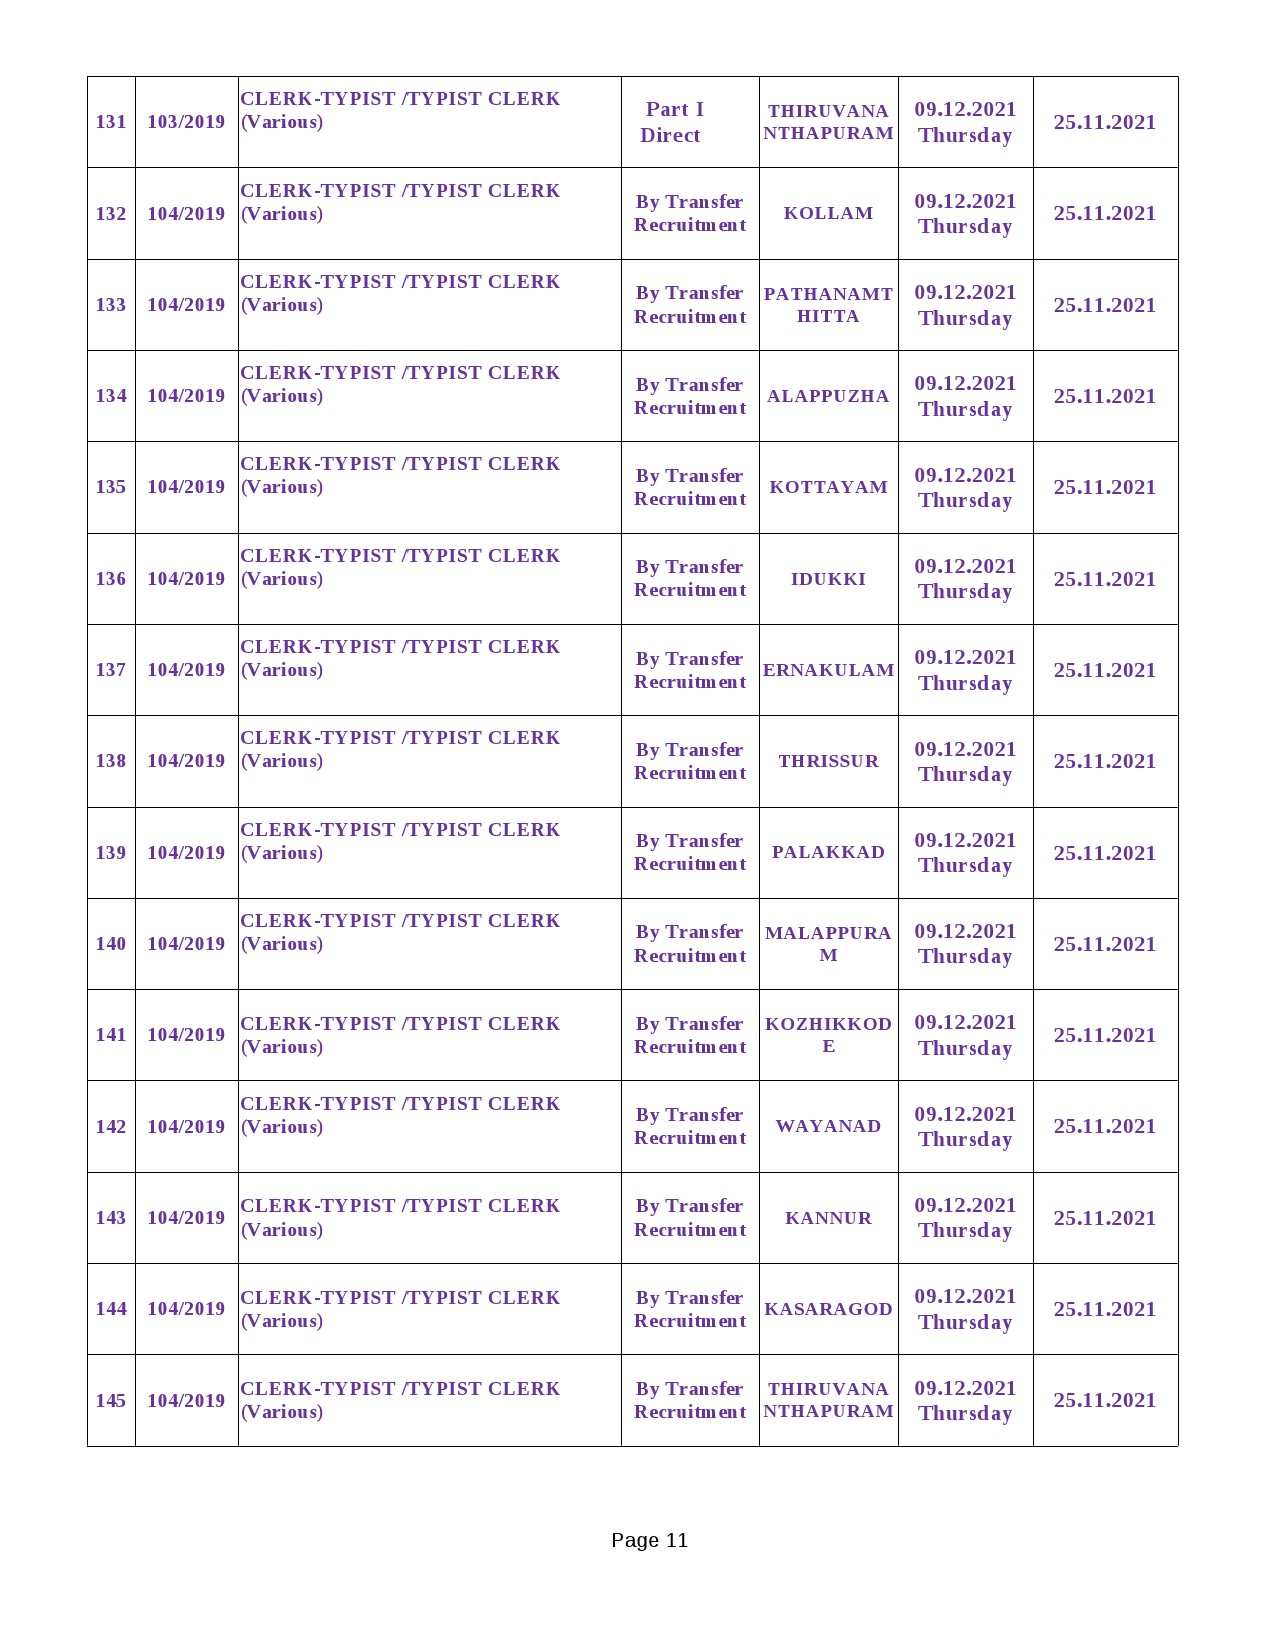 KPSC Exam Schedule Oct to Dec 2021 - Notification Image 11